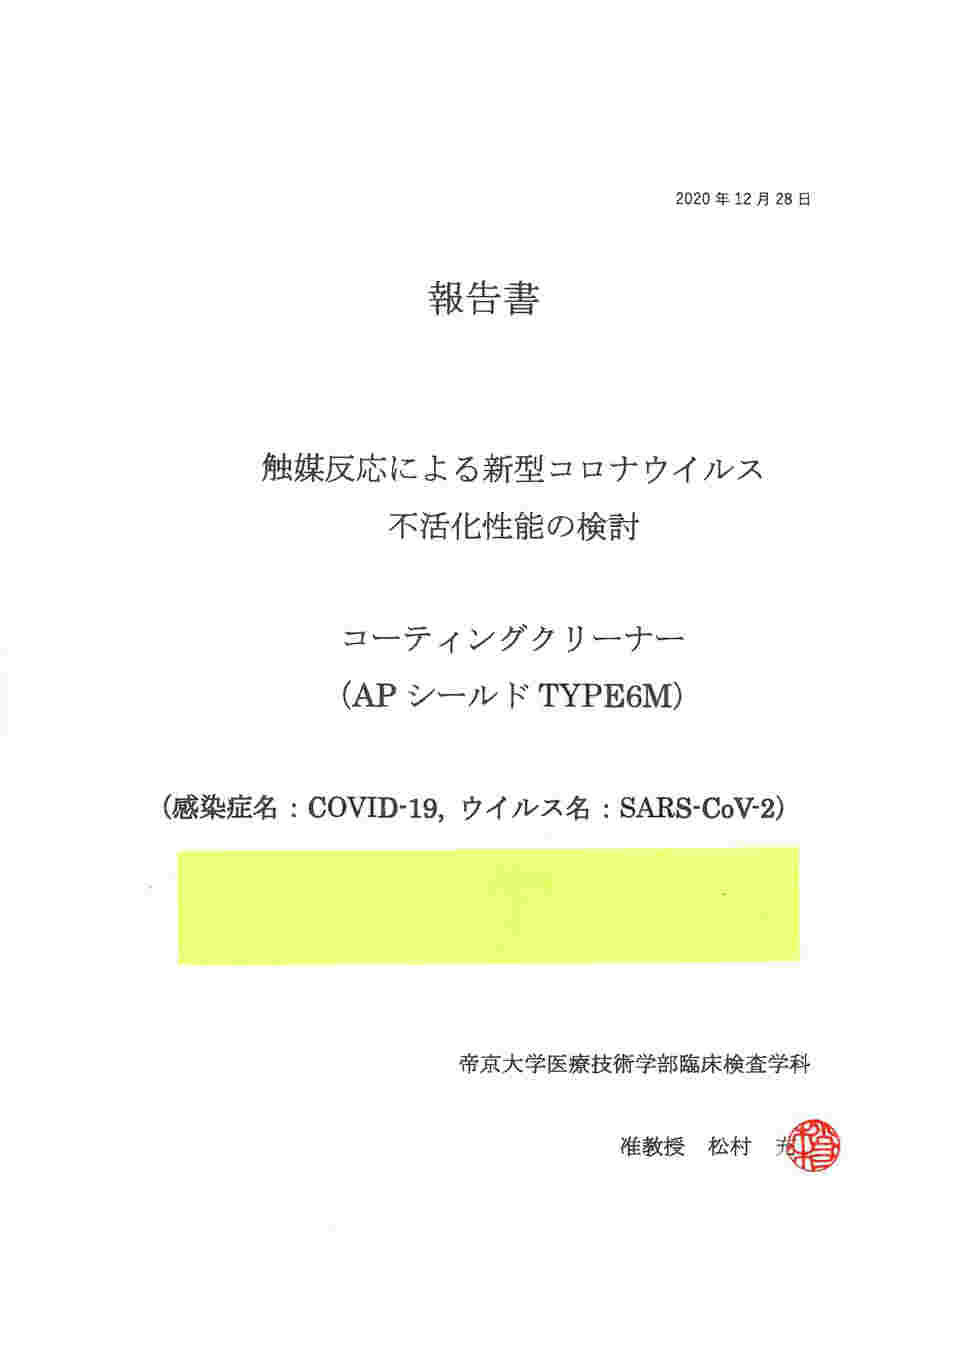 65-0546-67 APシールド TYPE6M 業務用（抗ウイルス・抗菌性クリーナー